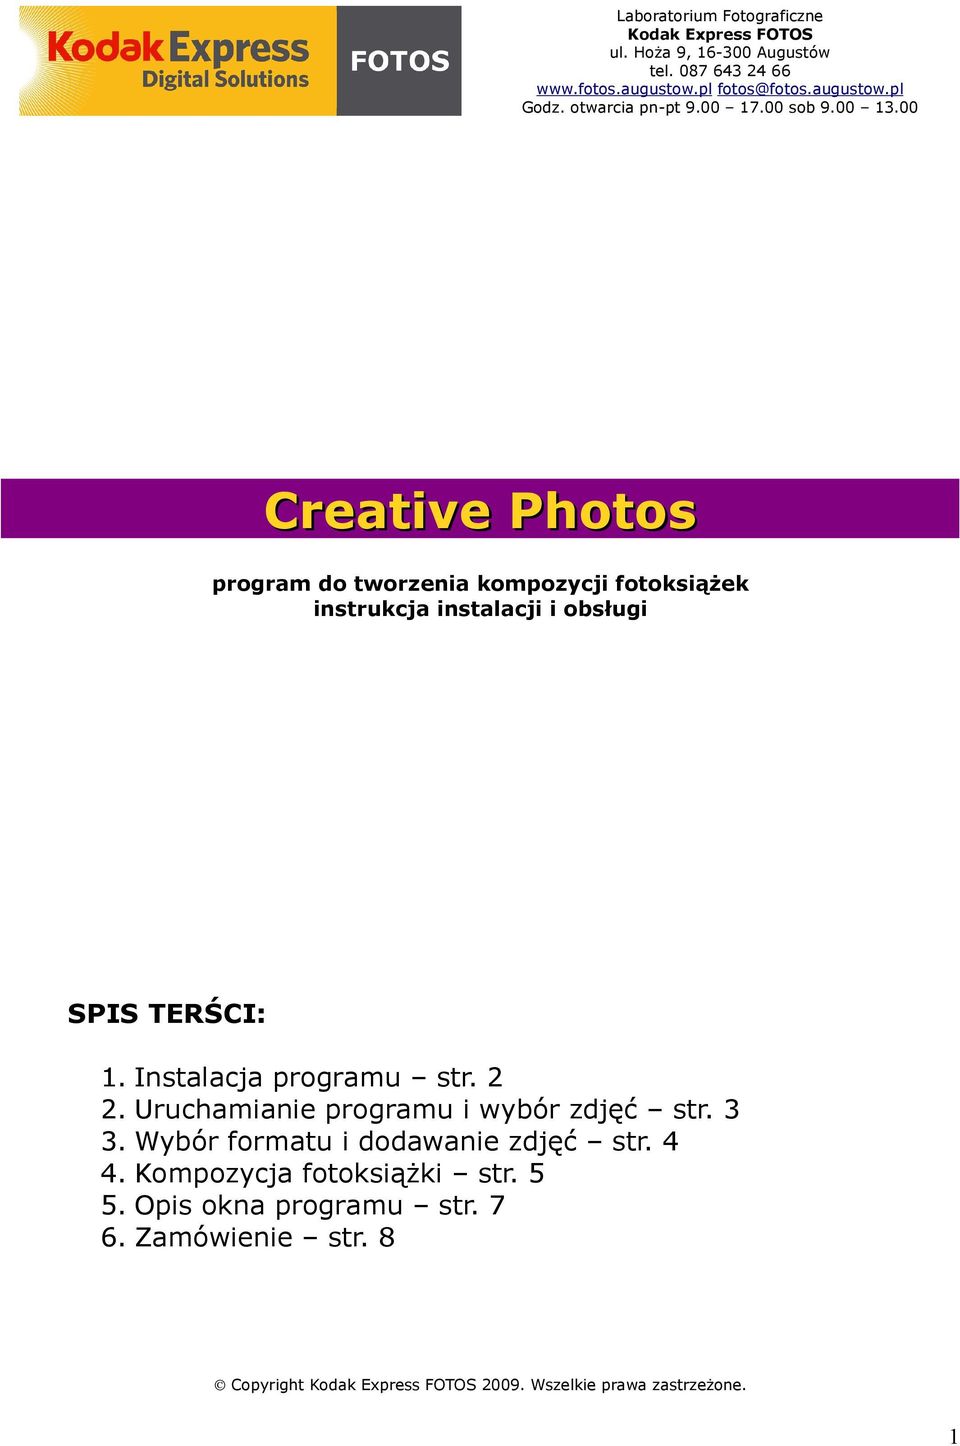 00 Creative Photos program do tworzenia kompozycji fotoksiążek instrukcja instalacji i obsługi SPIS TERŚCI: 1. Instalacja programu str. 2 2.